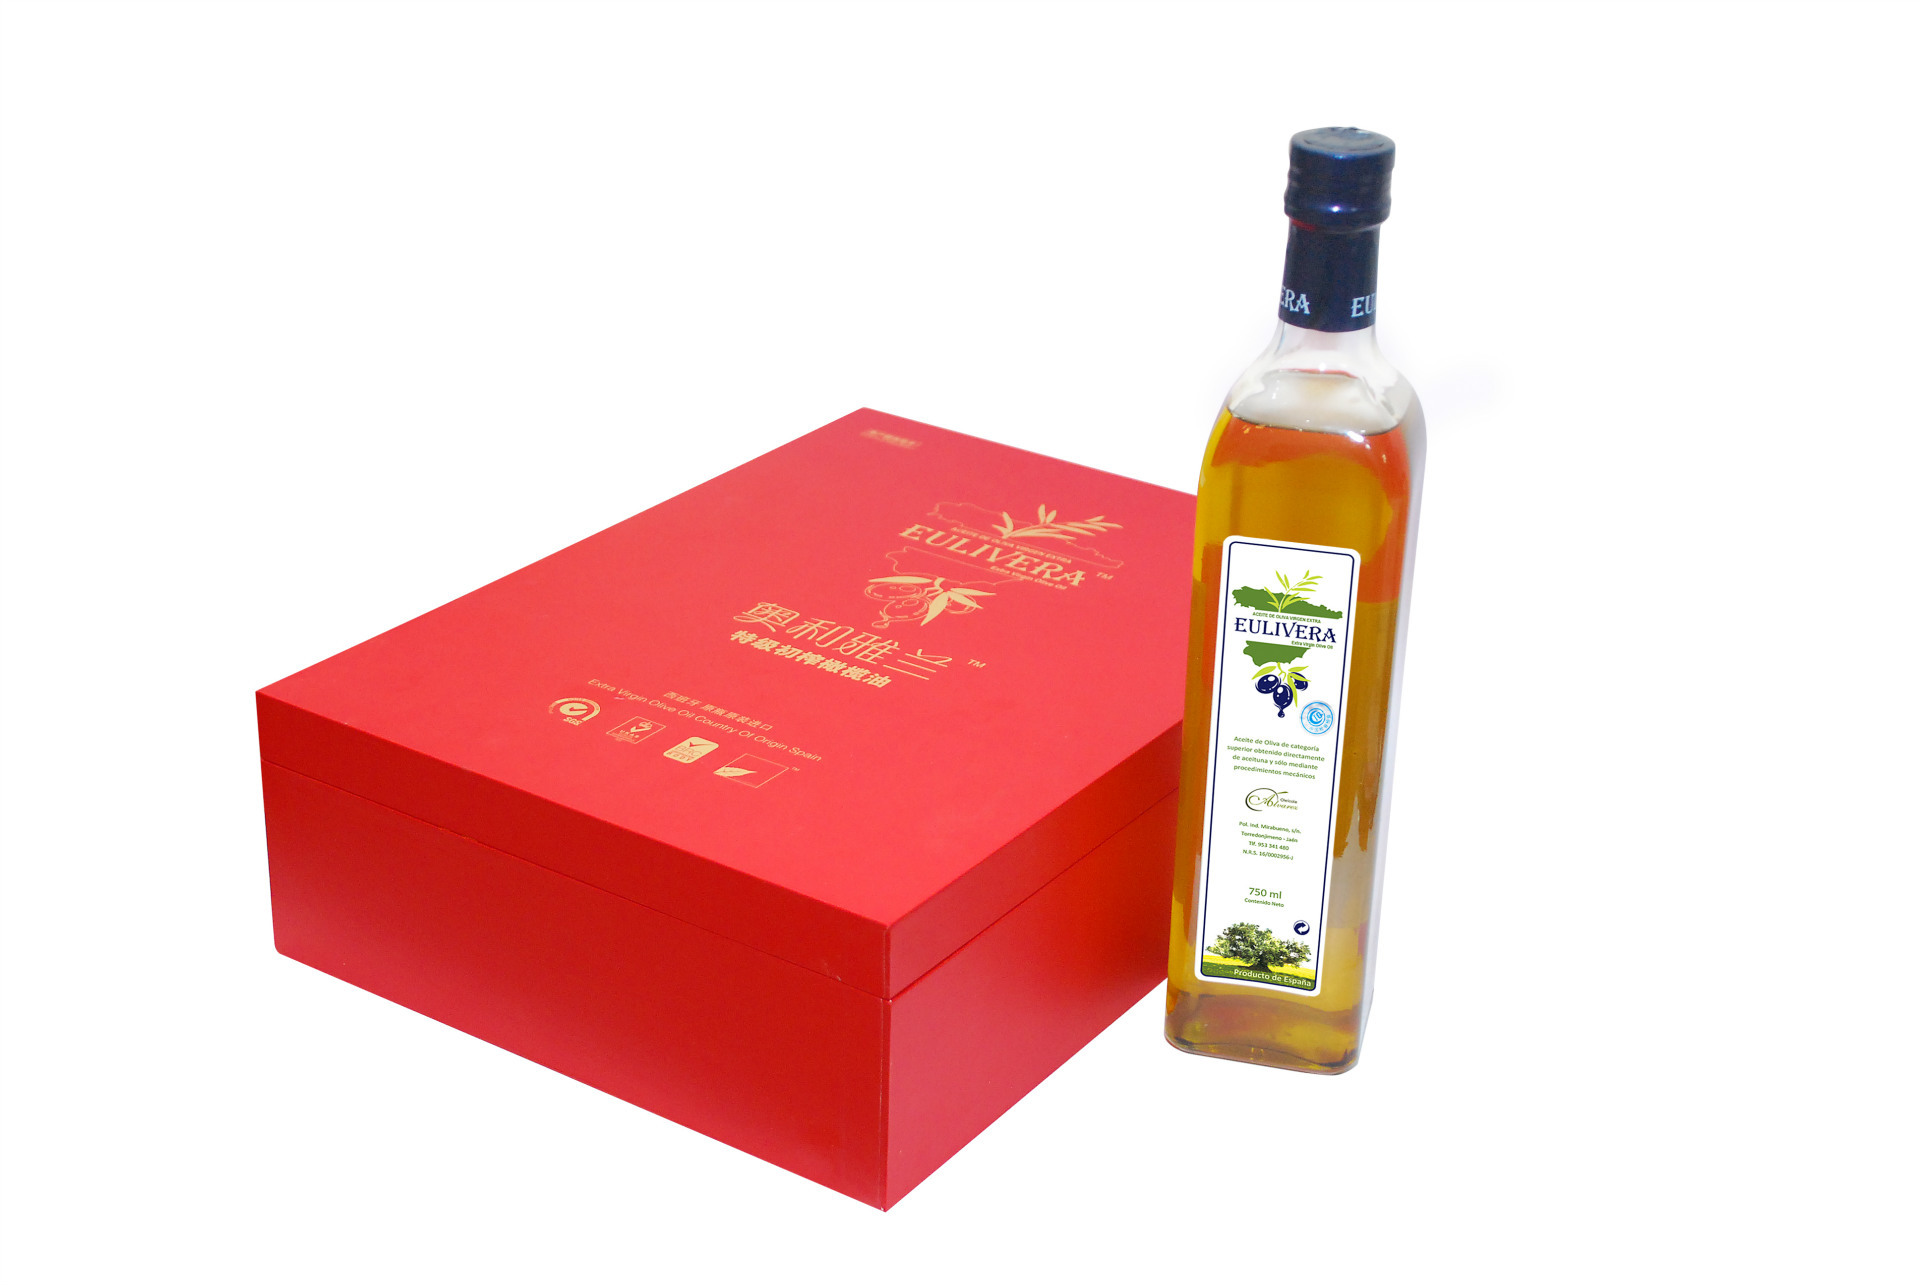 西班牙进口特级初榨橄榄油750ml*2豪华木盒礼盒装 中秋送礼佳品